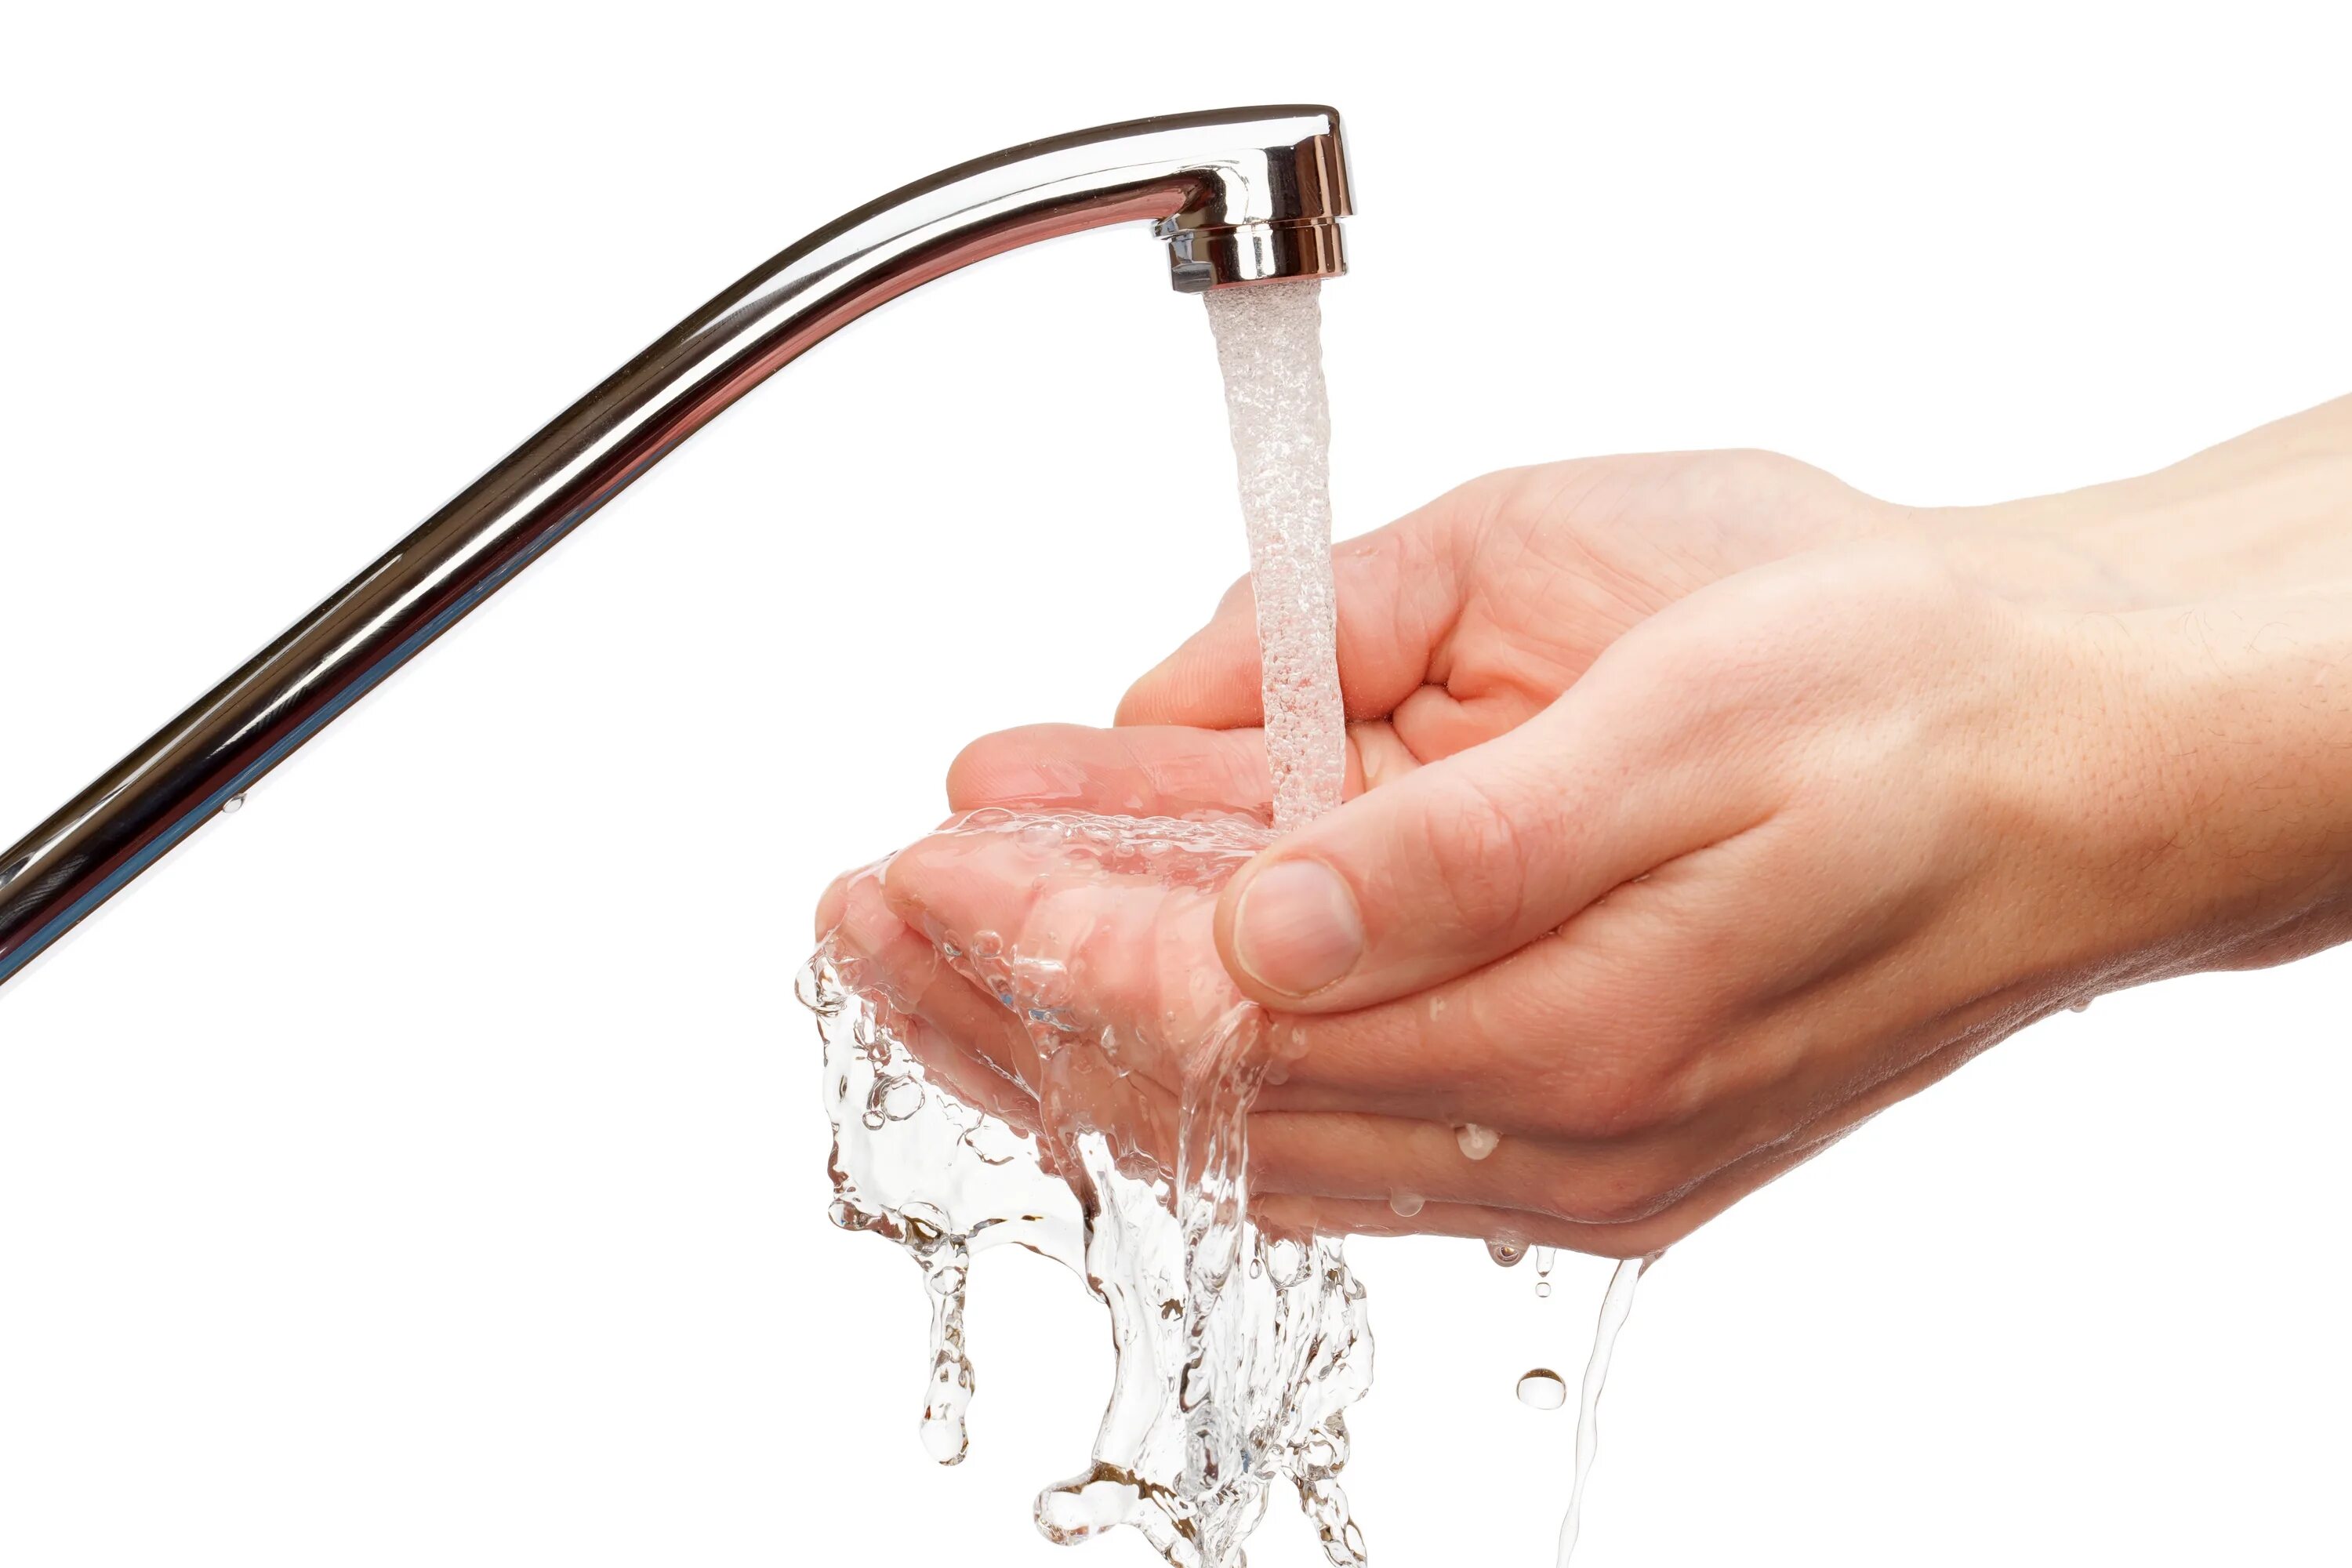 Мыть мыльной воды. Кран с водой. Руки под краном с водой. Руки под струей воды. Мытье рук под краном.